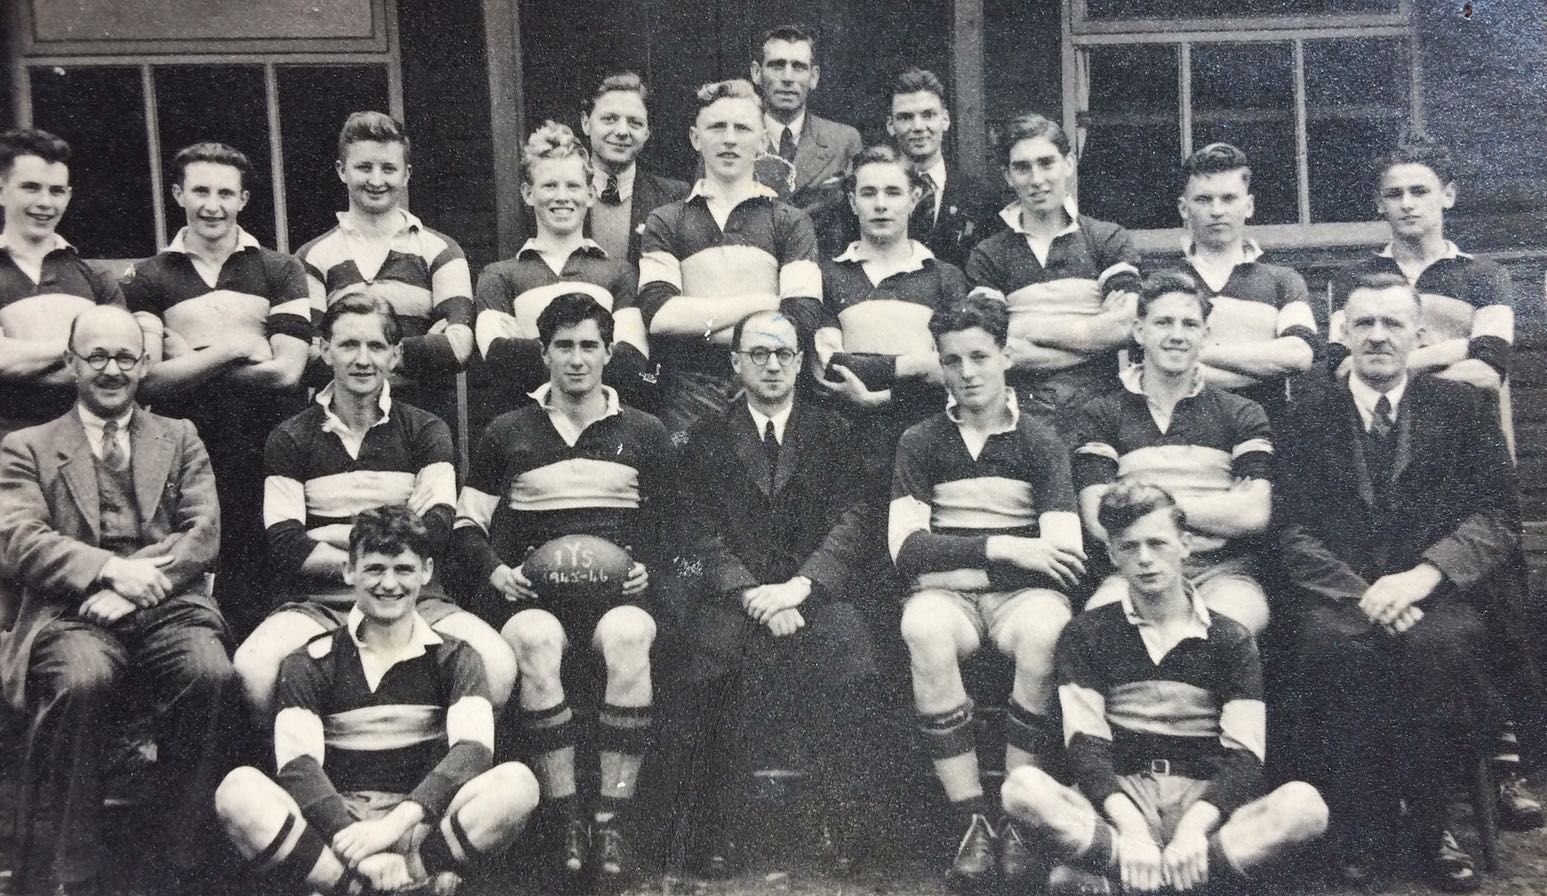 Ystalyfera County School rugby team 1945-46